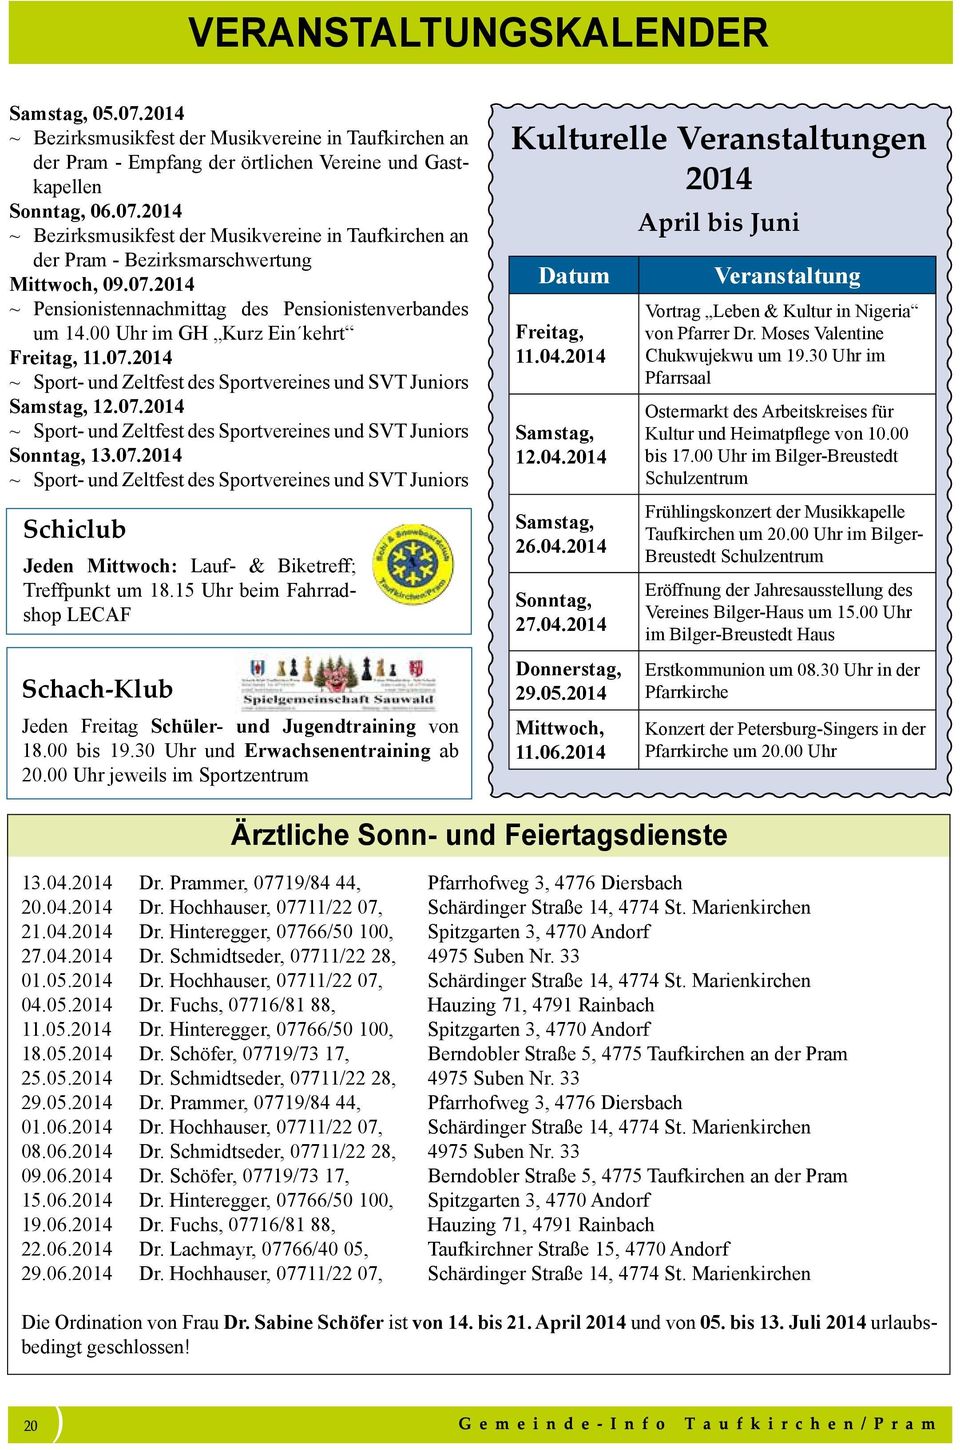 07.2014 ~ Sport- und Zeltfest des Sportvereines und SVT Juniors Schiclub Jeden Mittwoch: Lauf- & Biketreff; Treffpunkt um 18.